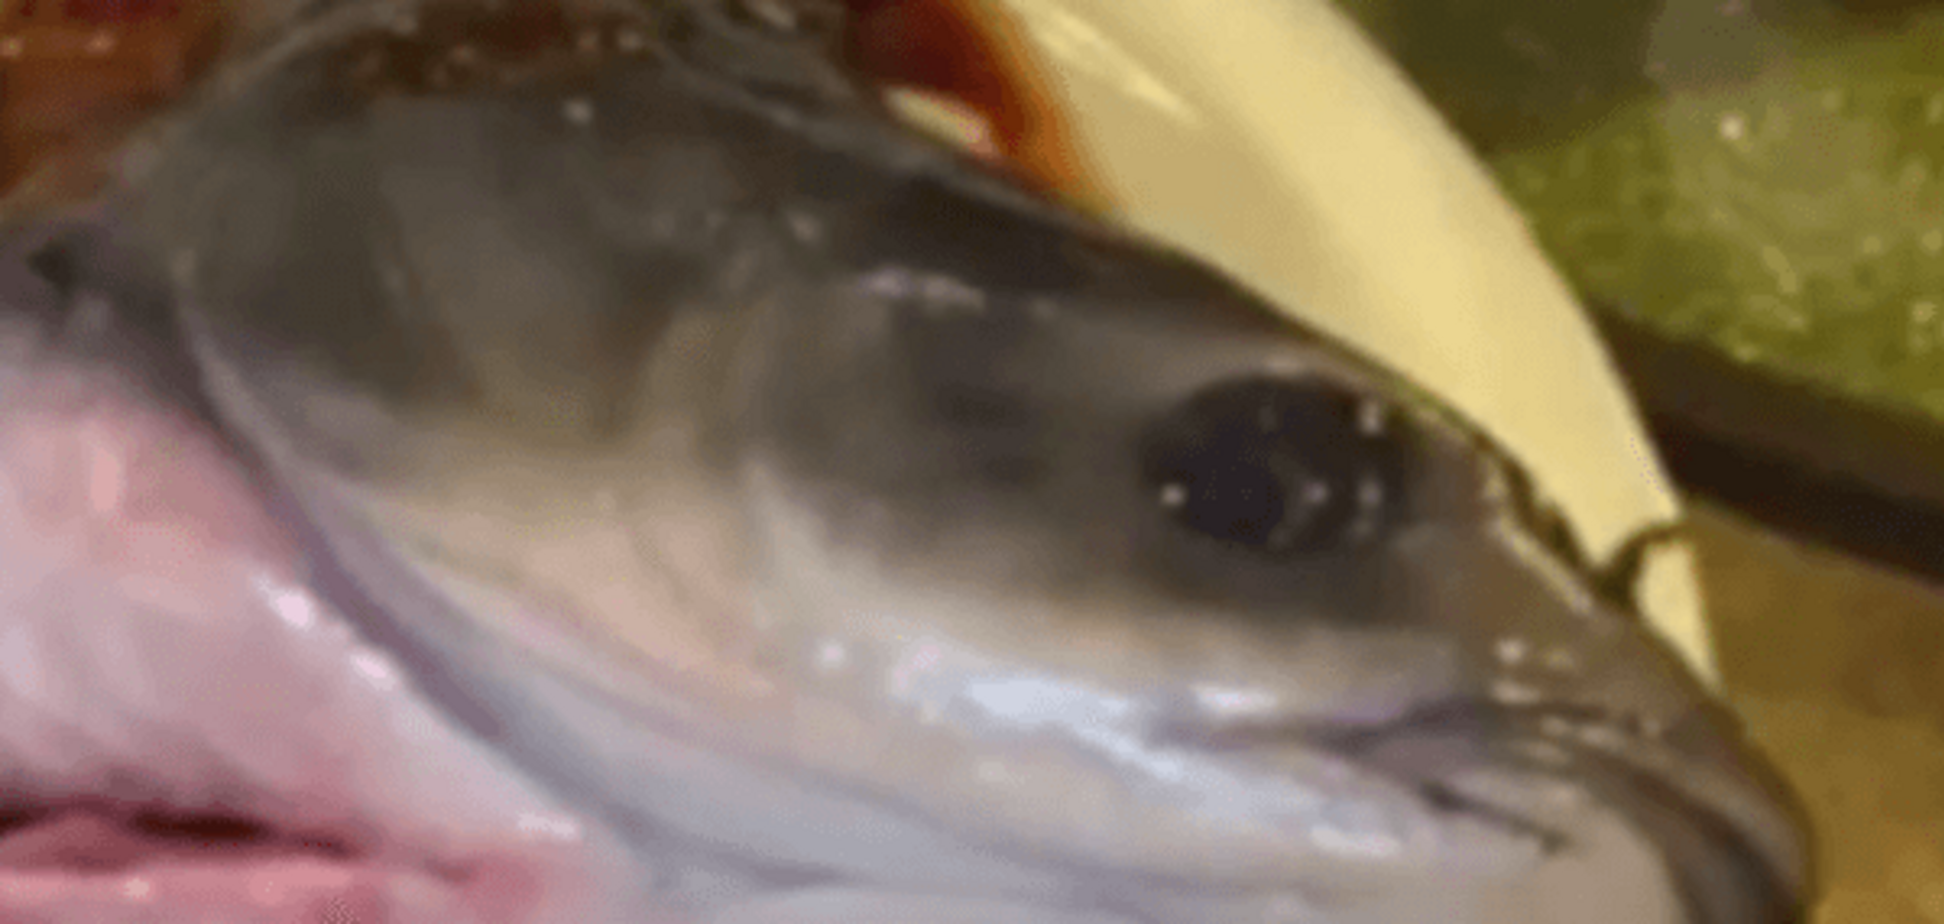 В Китае приготовленная рыба внезапно 'ожила' в тарелке: видеофакт